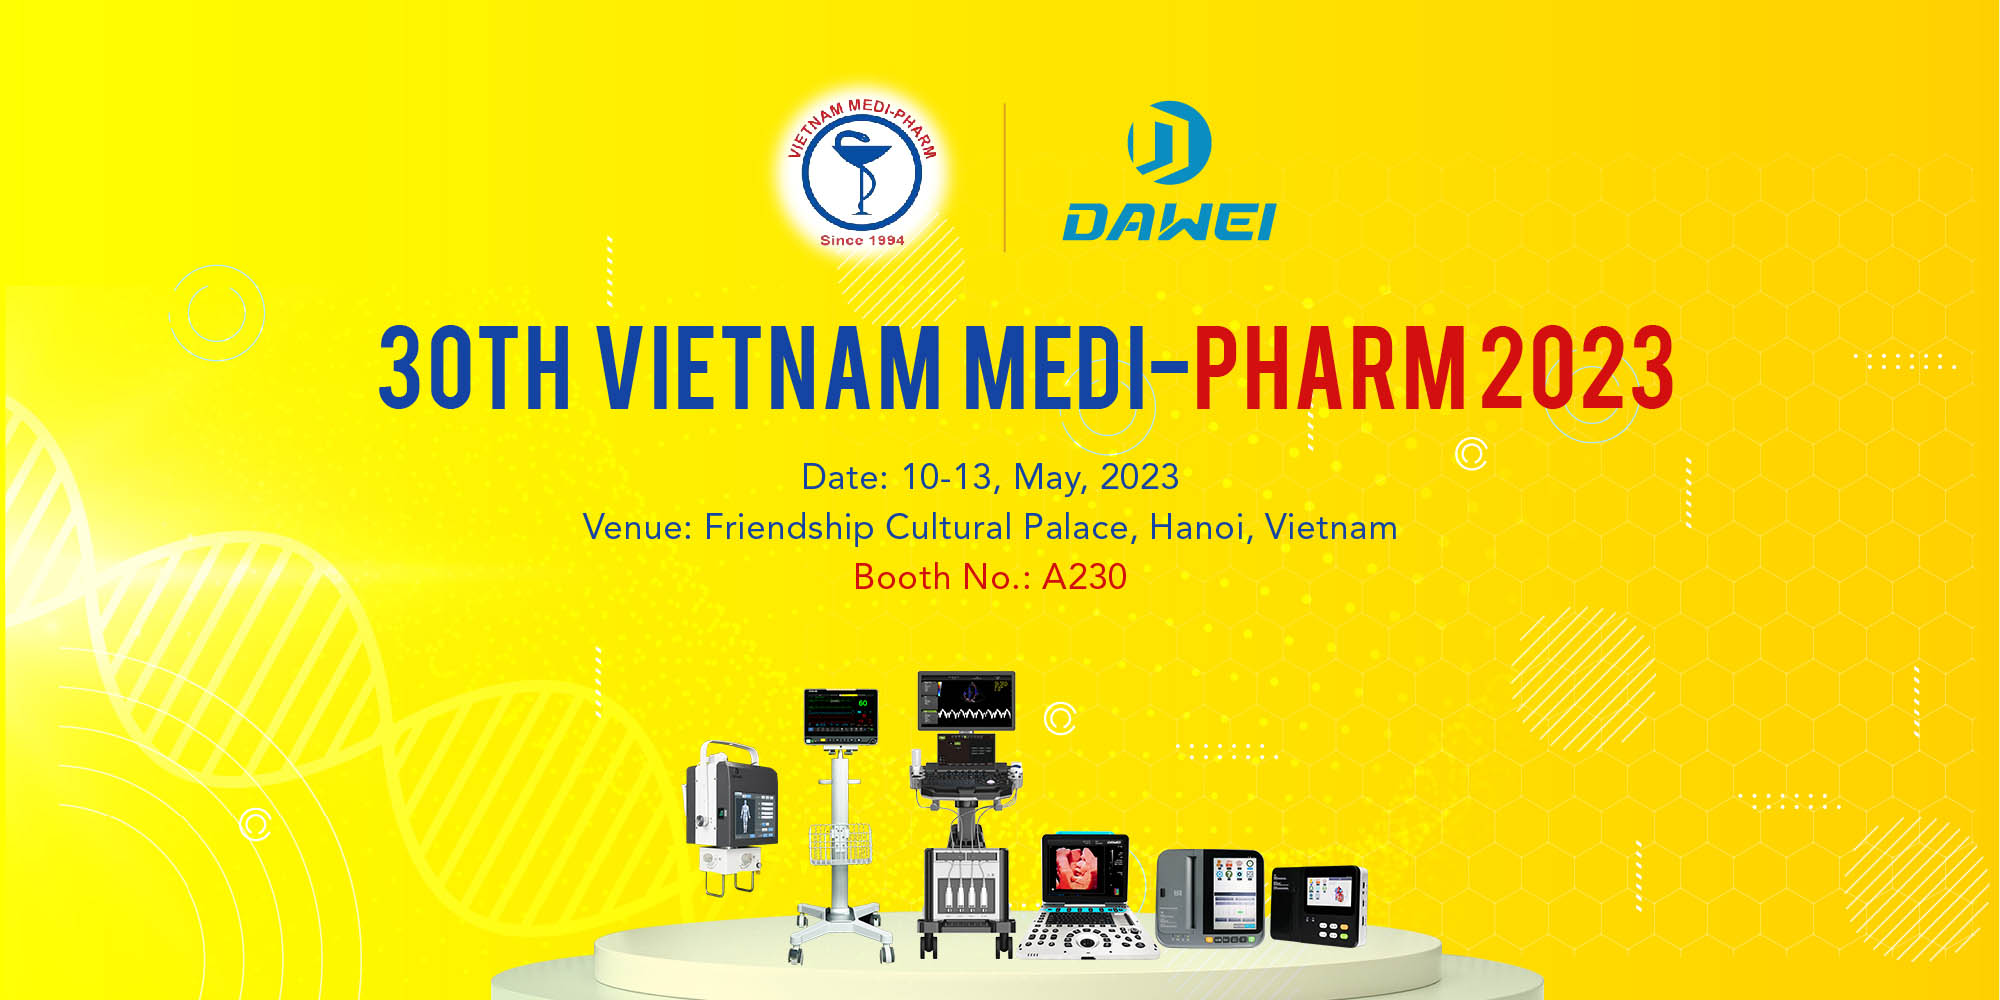 dawei Medical 30th Vietnam Medi-Pharm 2023 සඳහා සහභාගී වනු ඇත